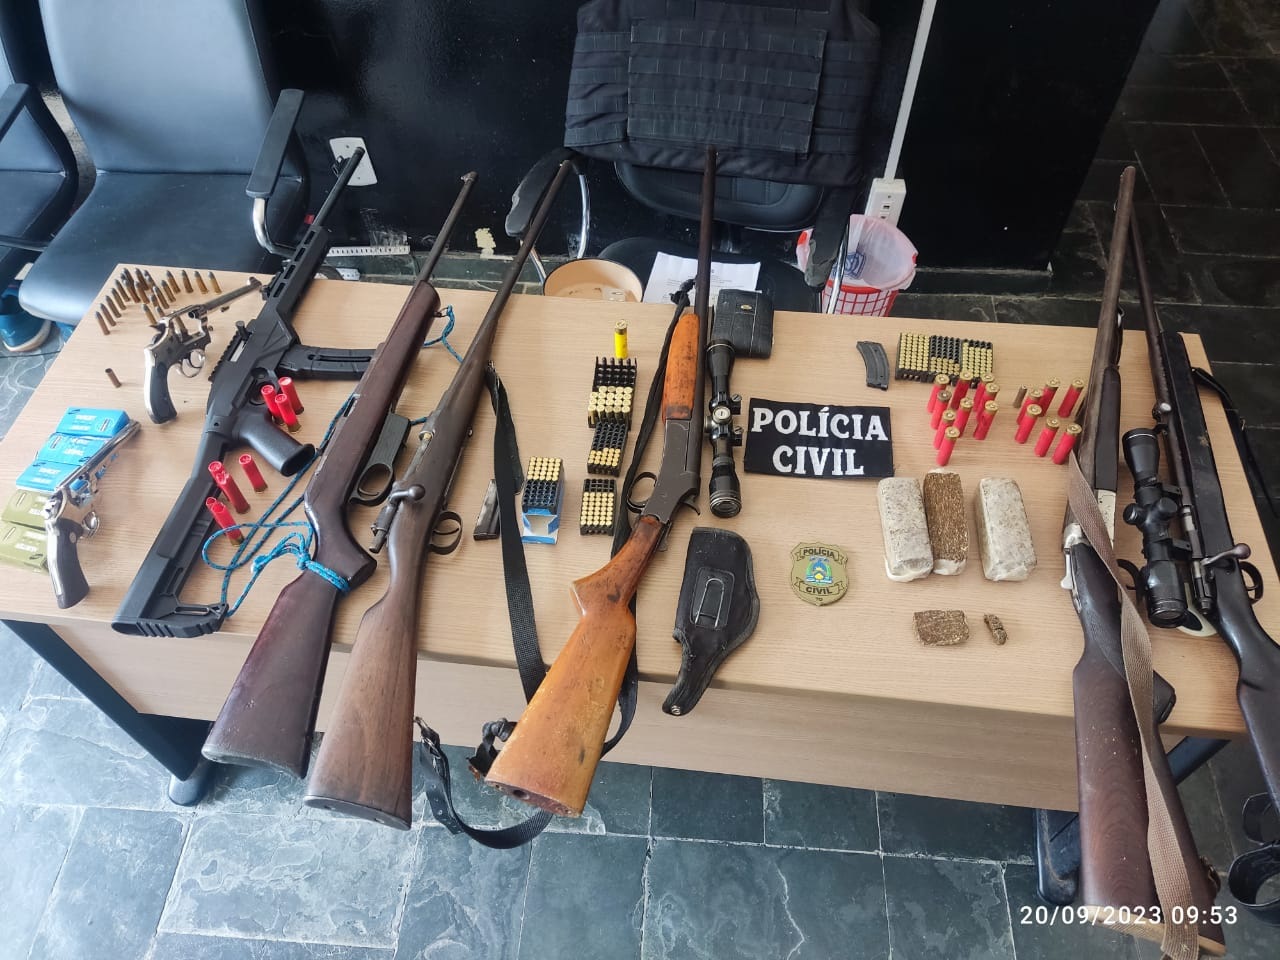 Várias armas, munições e drogas foram apreendidas pela Polícia Civil em Arraias